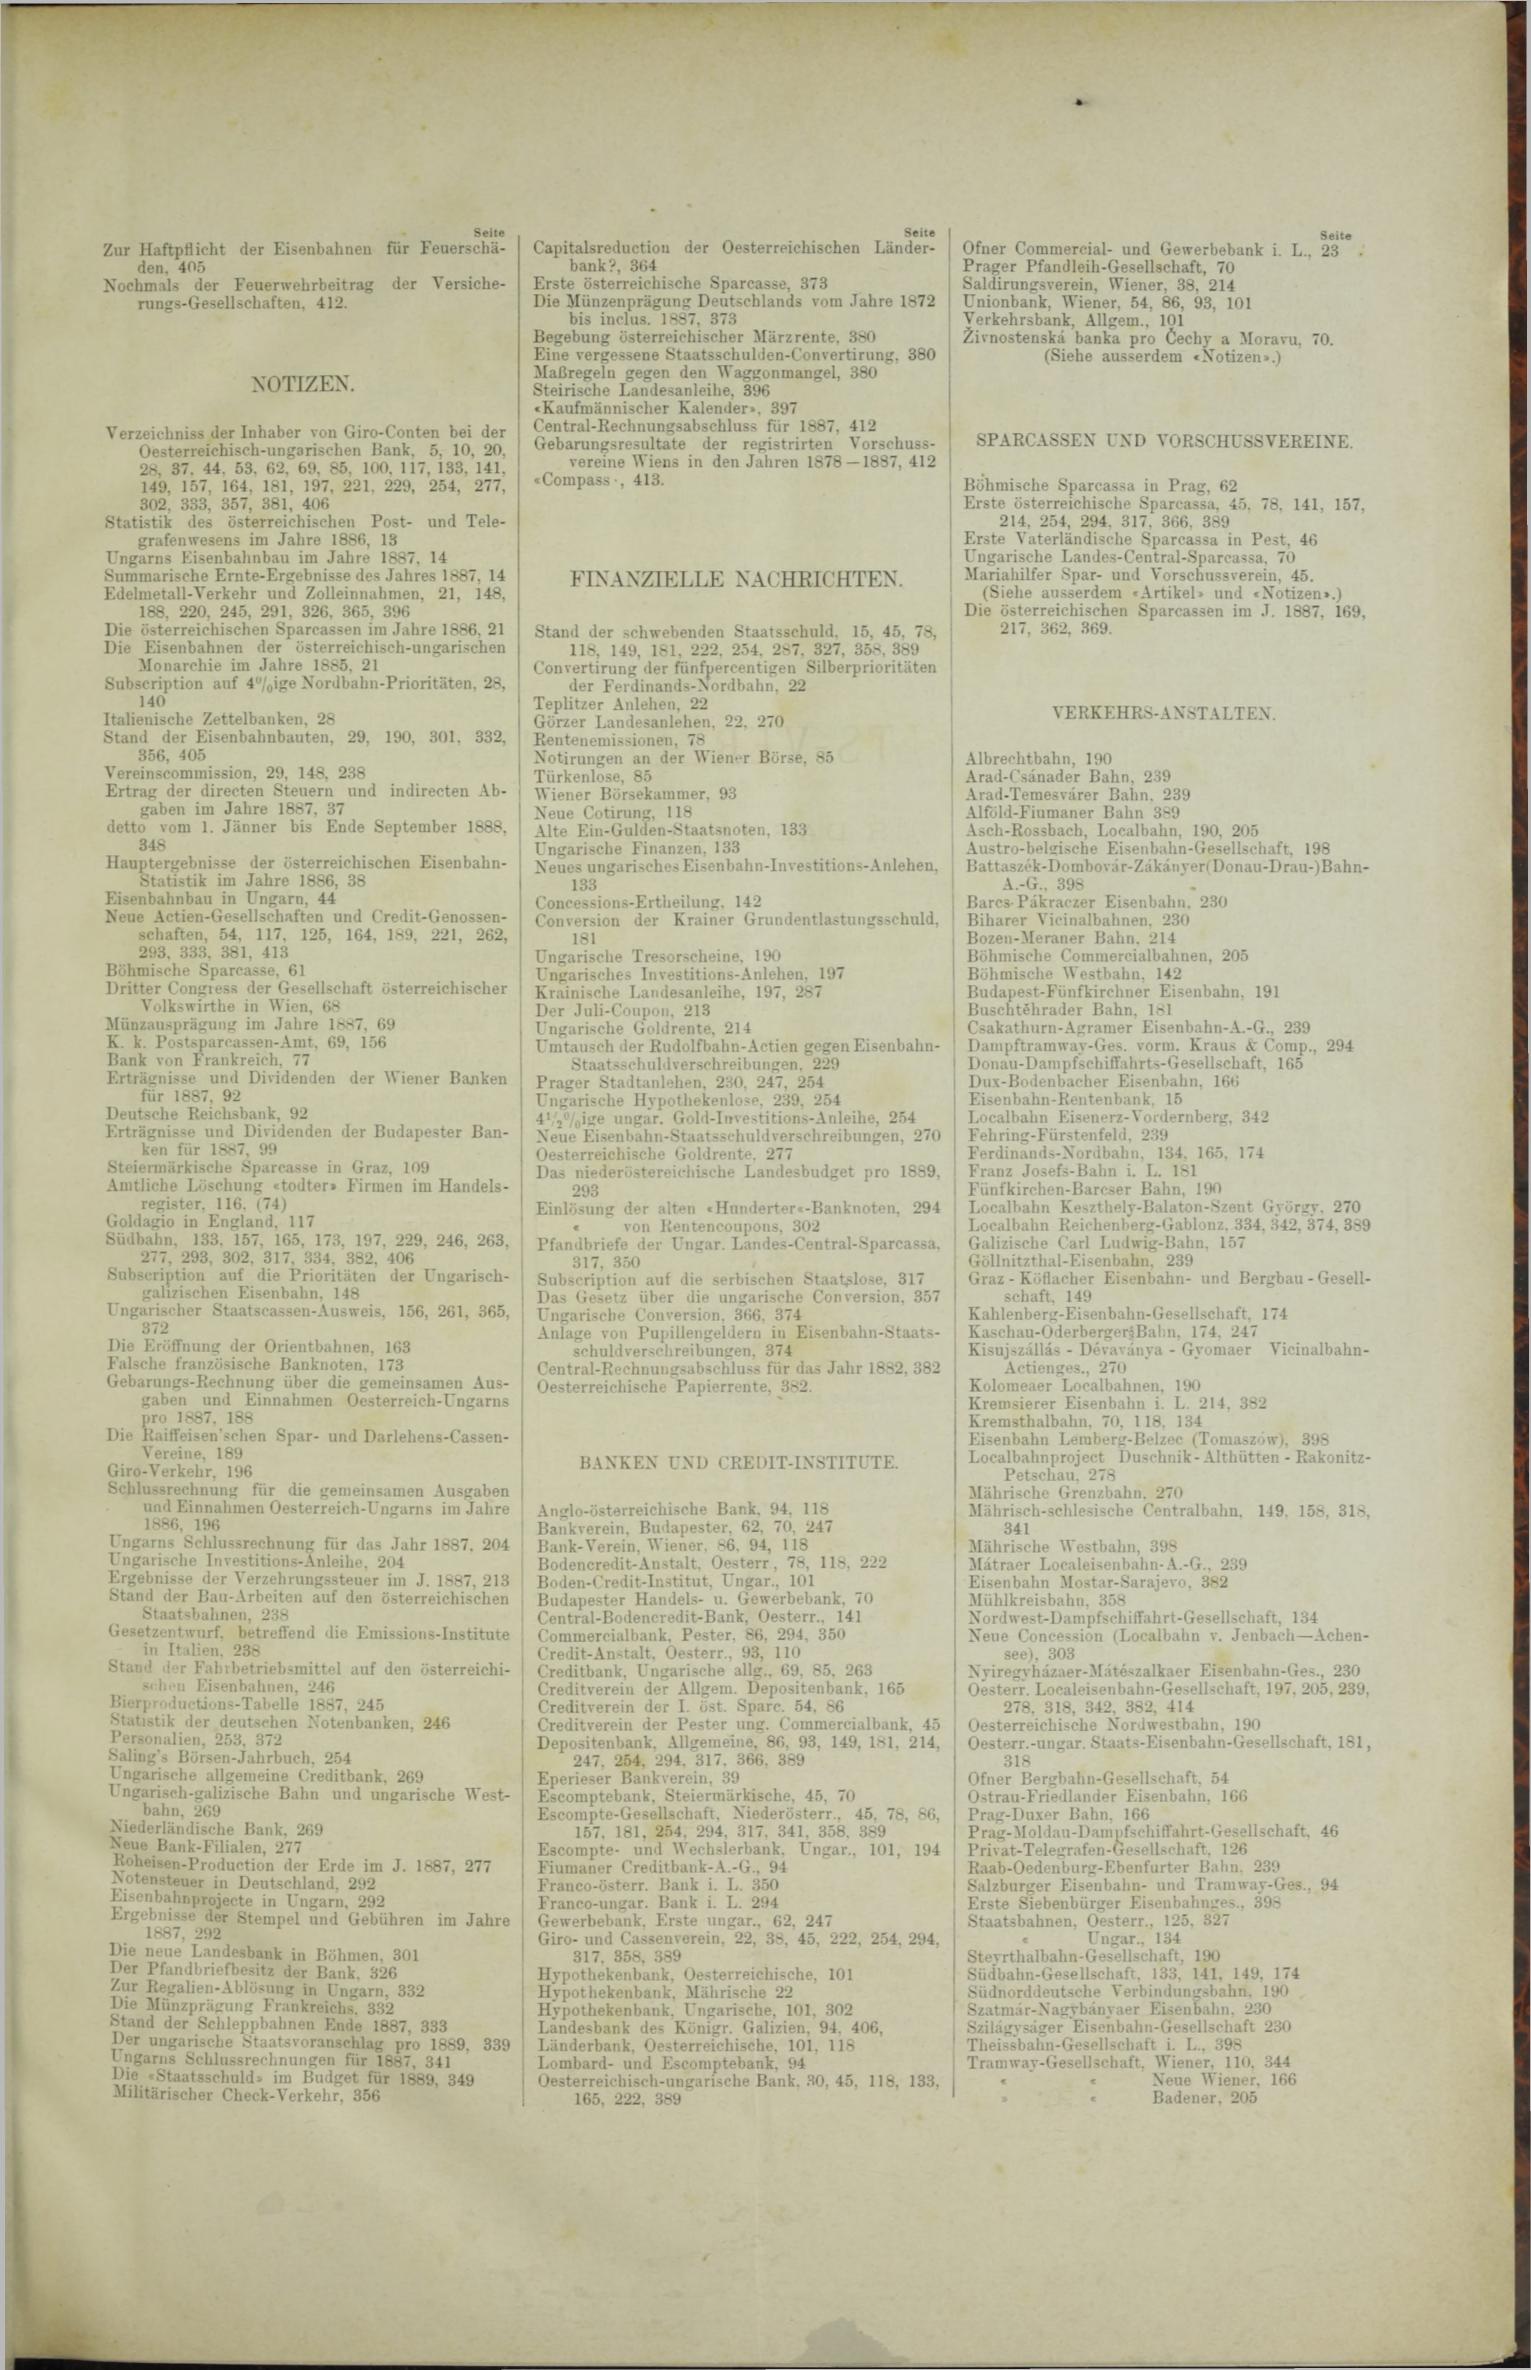 Der Tresor 27.09.1888 - Seite 11